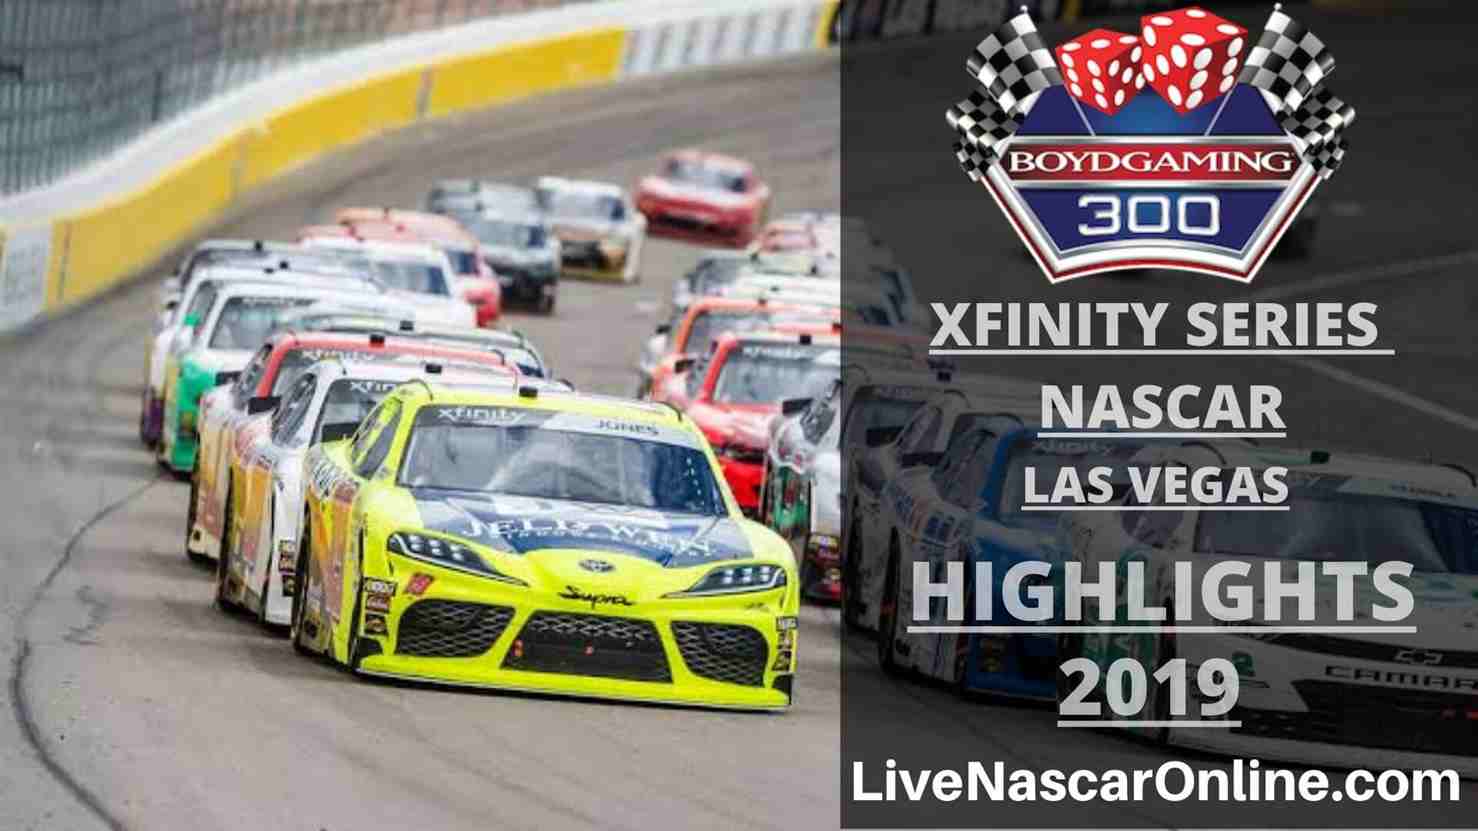 NASCAR XFINITY SERIES HIGHLIGHTS 2019 BOYD GAMING 300